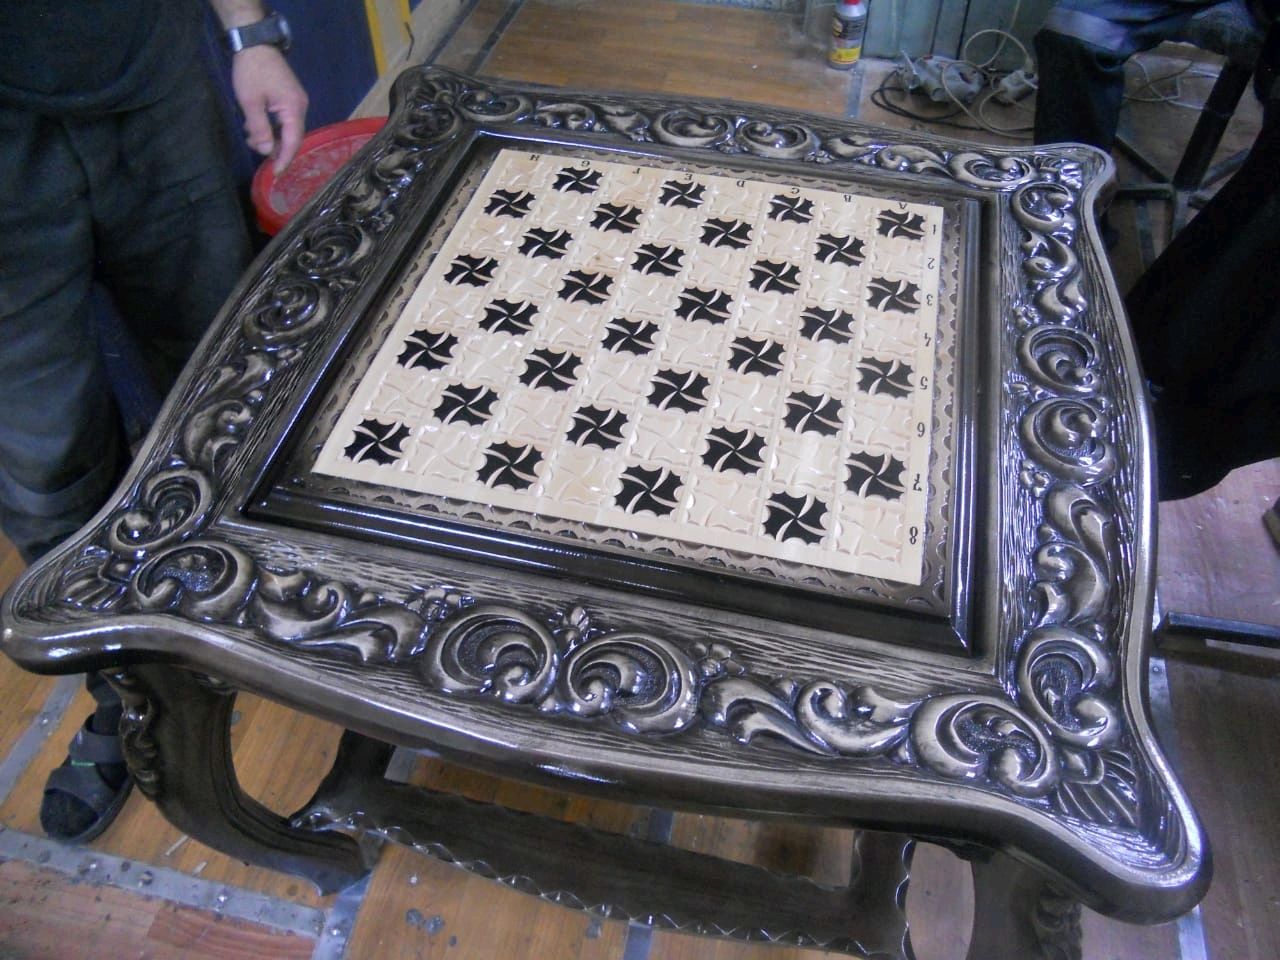 резной шахматный столик из дерева